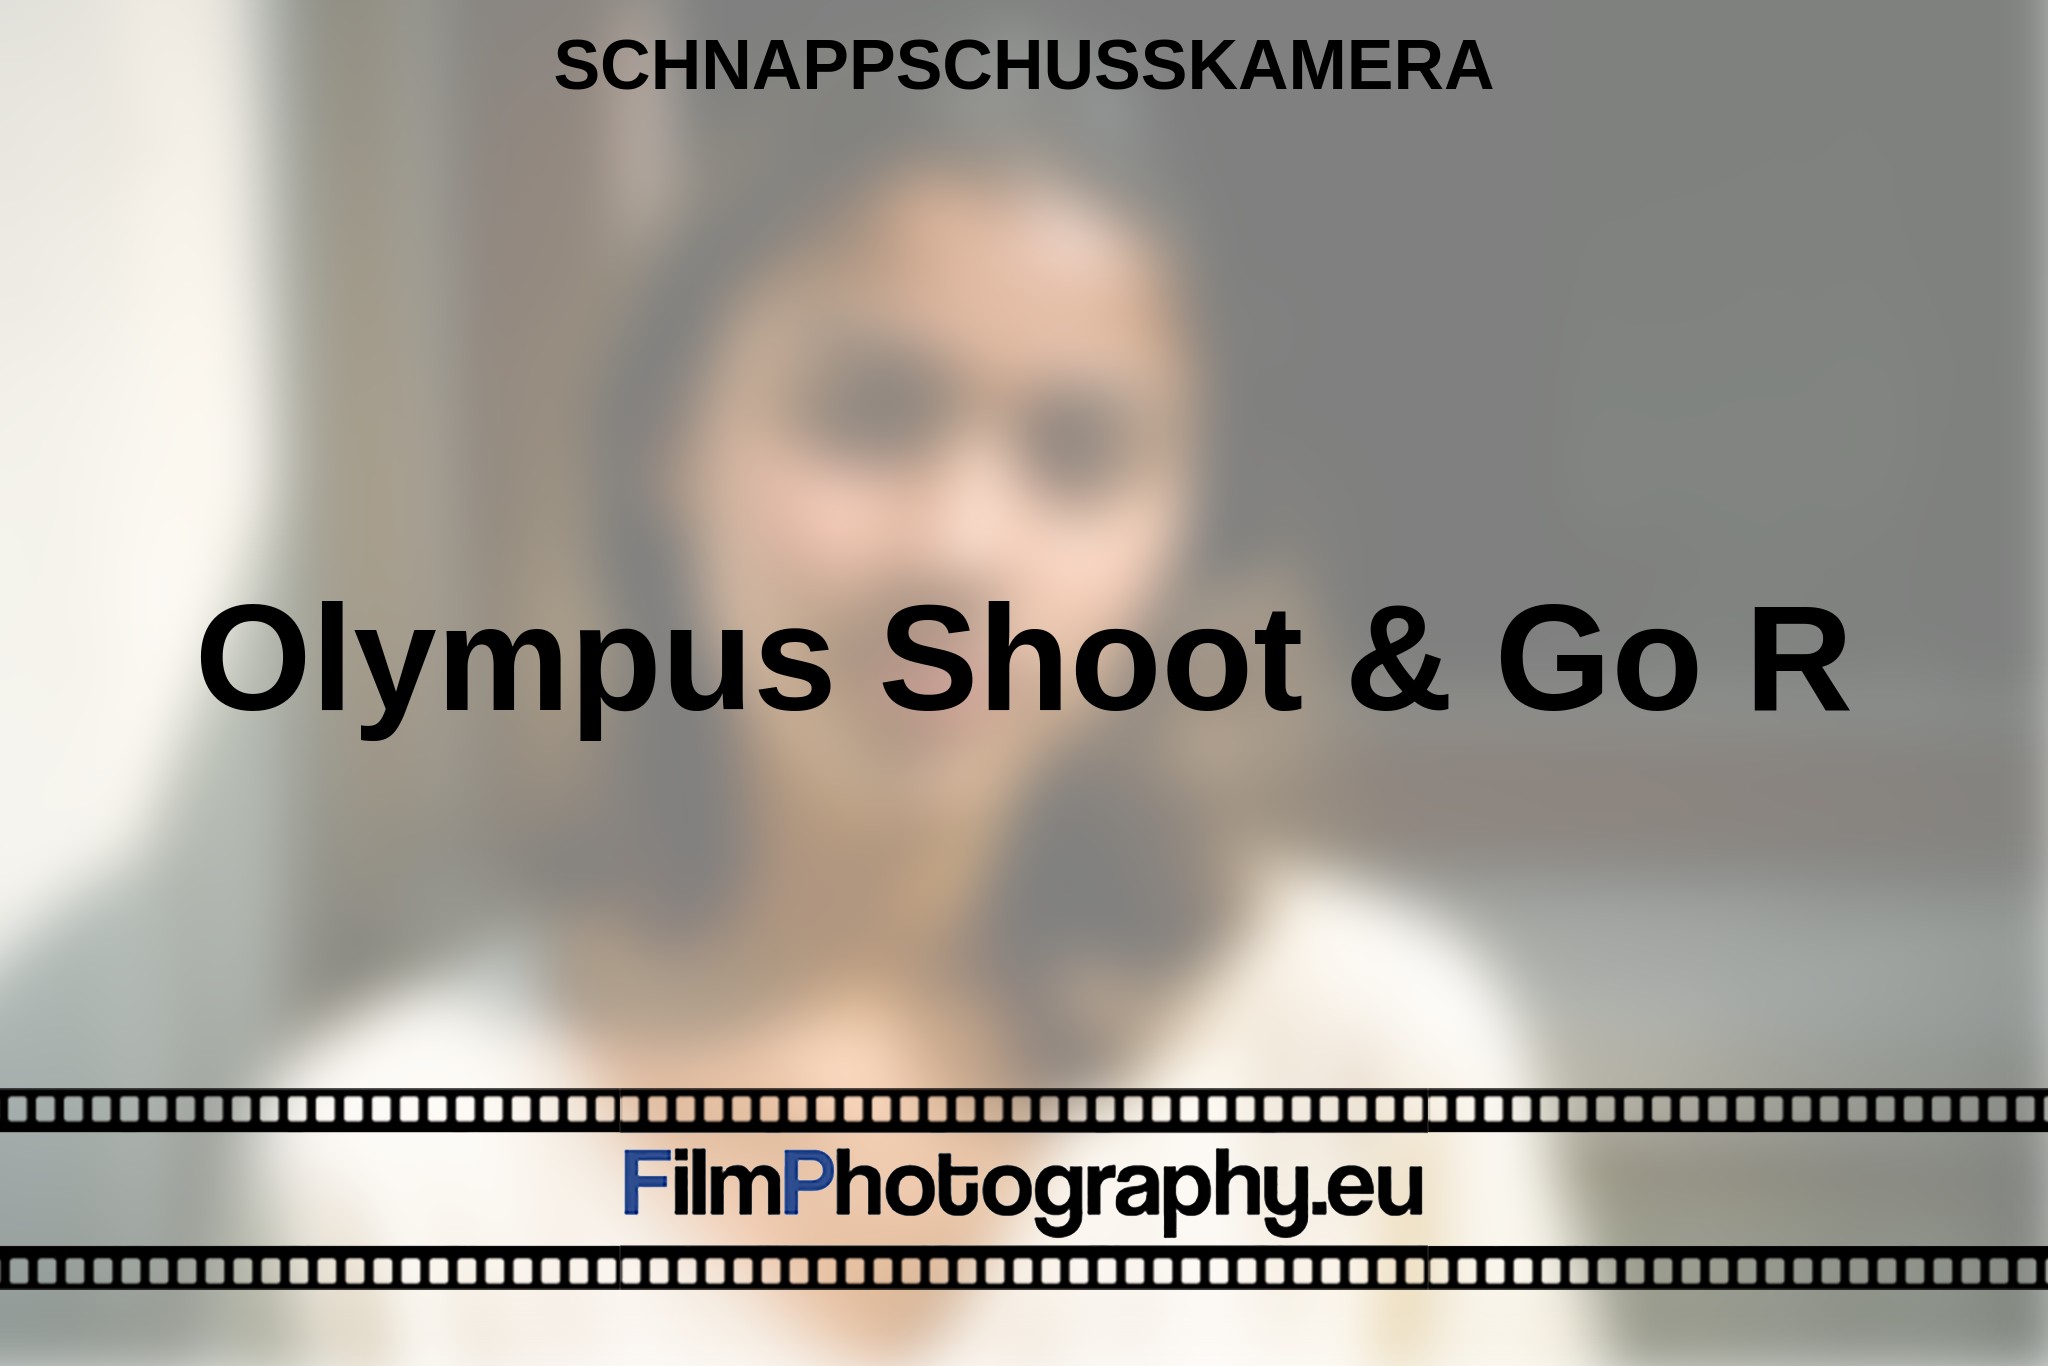 olympus-shoot-go-r-schnappschusskamera-bnv.jpg